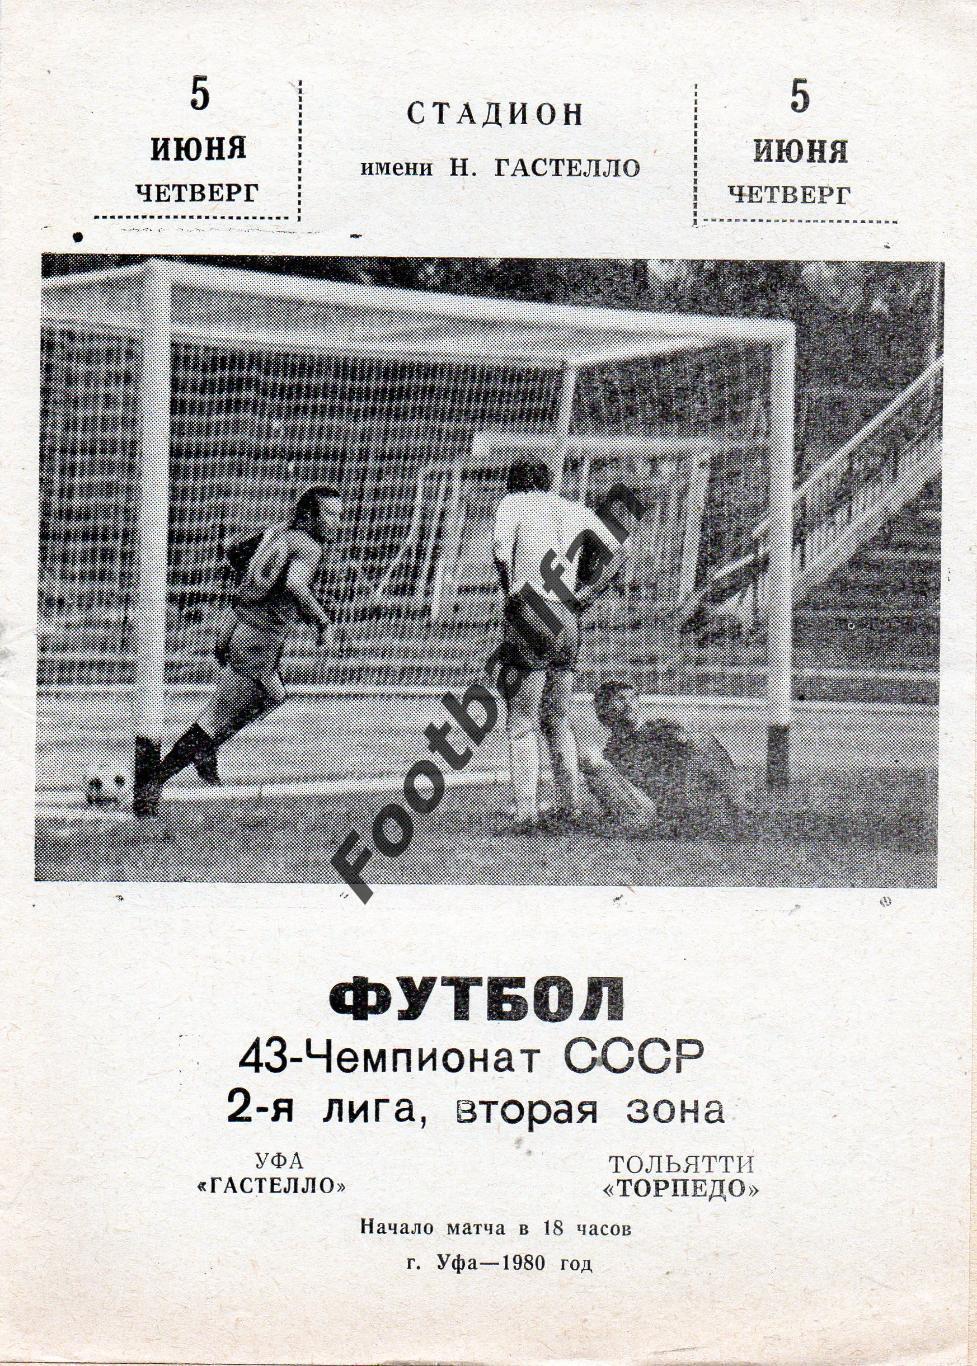 СК имени Н.Гастелло Уфа - Торпедо Тольятти 05.06.1980